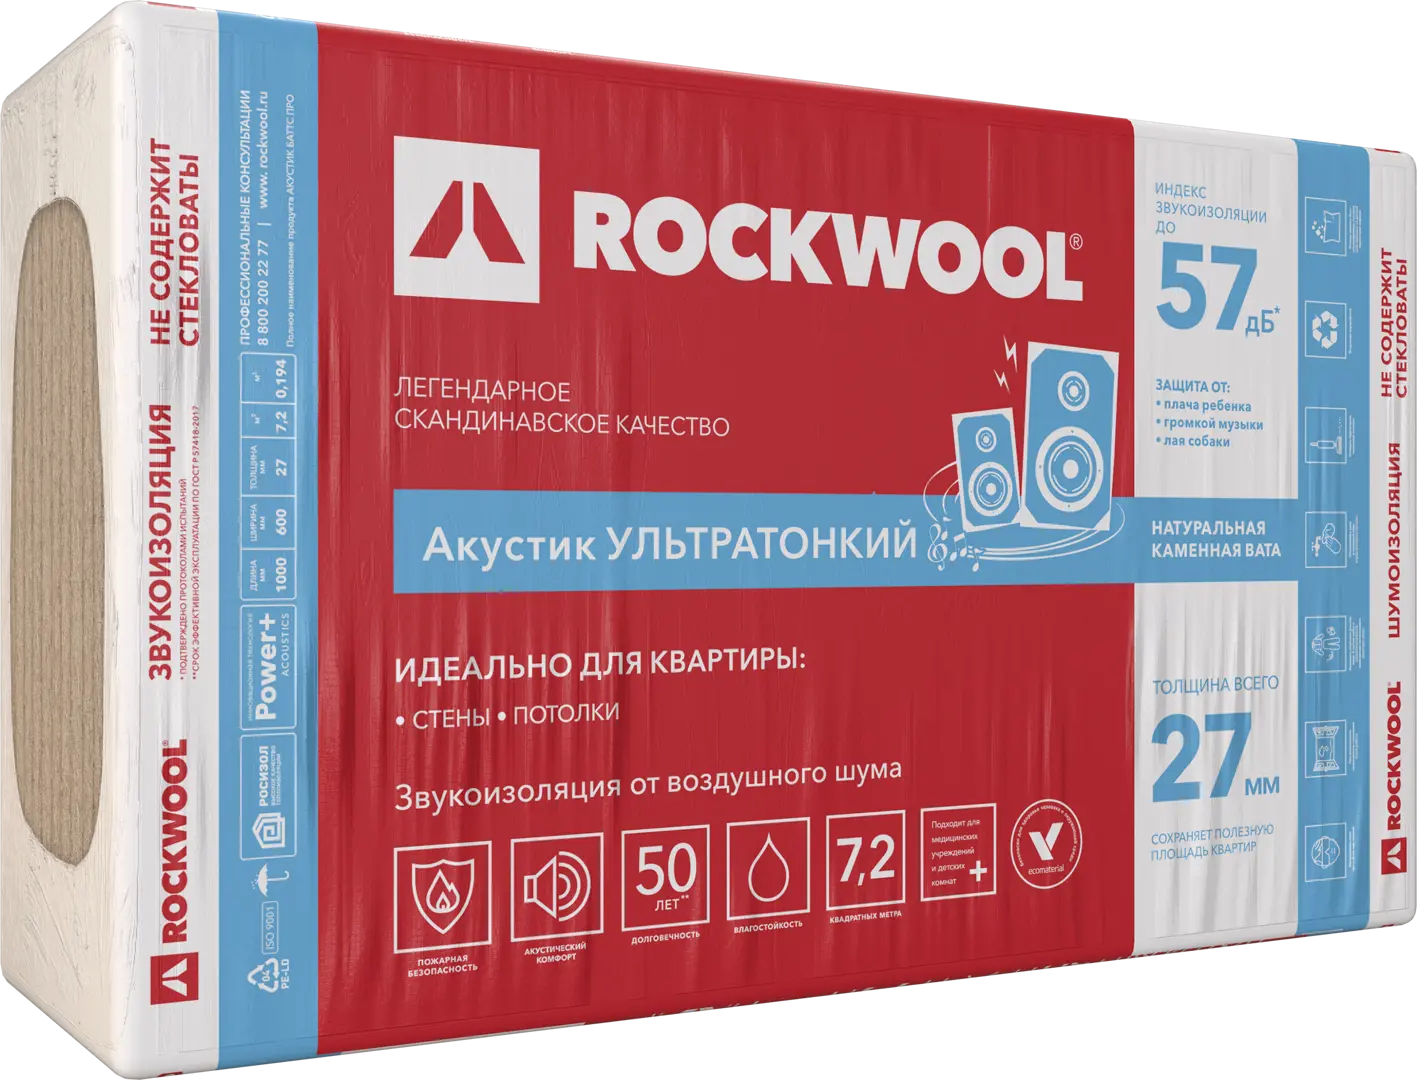 Звукоизоляция Rockwool Акустик ультратонкий 27 мм 7.2 м? звукоизоляция акустикнауф плита 50 мм 6 м